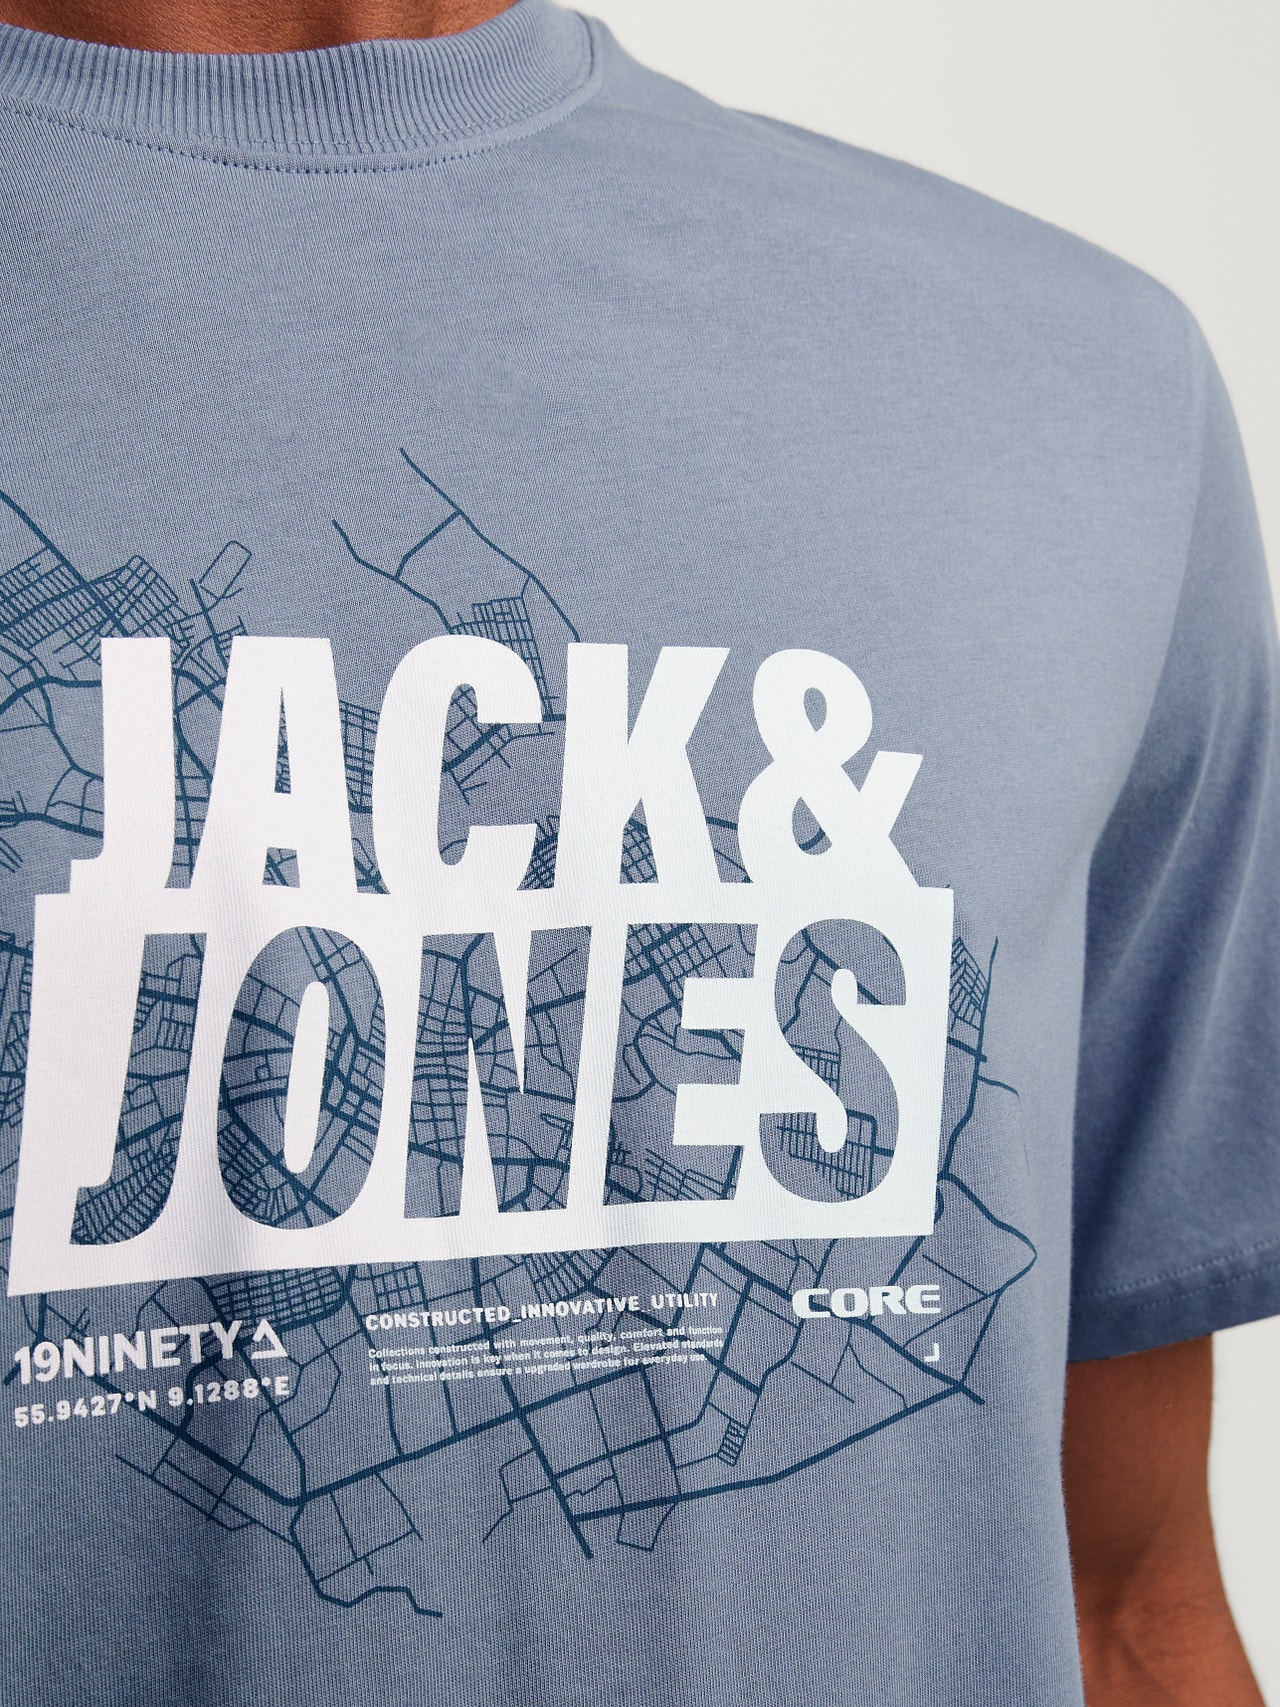 Jack & Jones Printet Crew neck T-shirt -Flint Stone - 12257908